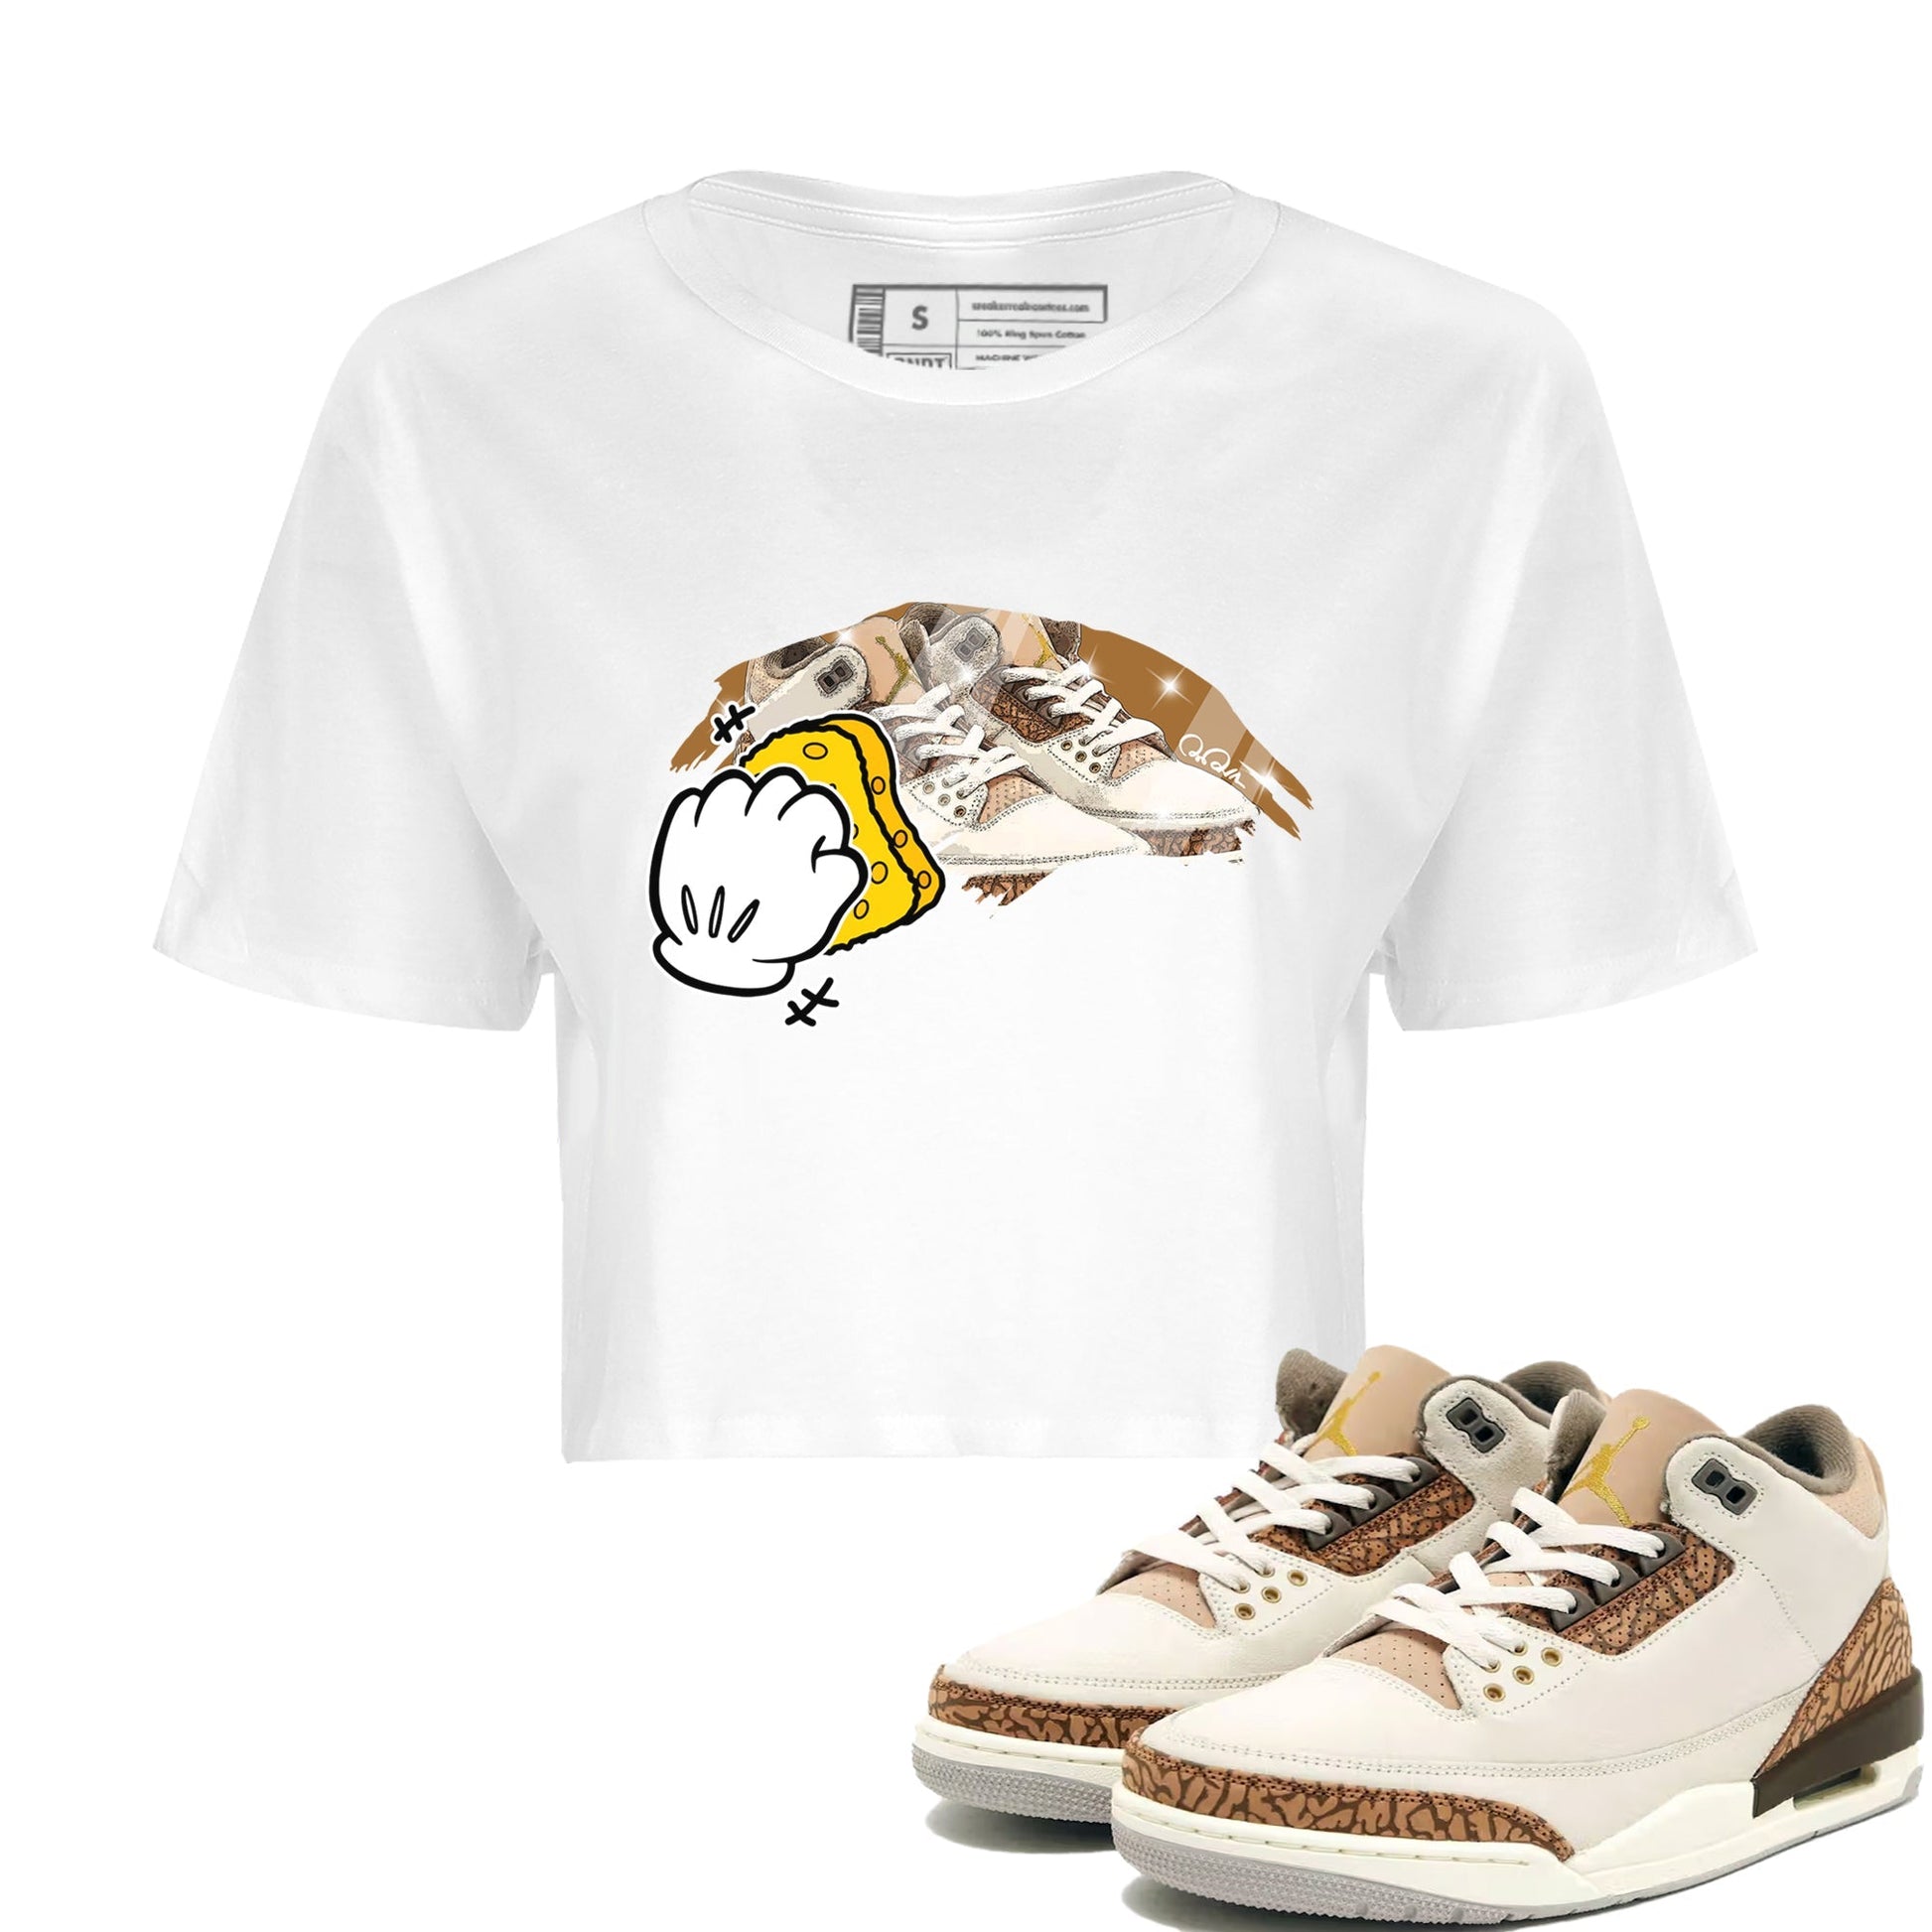 Air Jordan 3 Palomino Sneaker Match Tees Wiping Sneaker Tees AJ3 Palomino Sneaker Release Tees Women's Shirts White 1